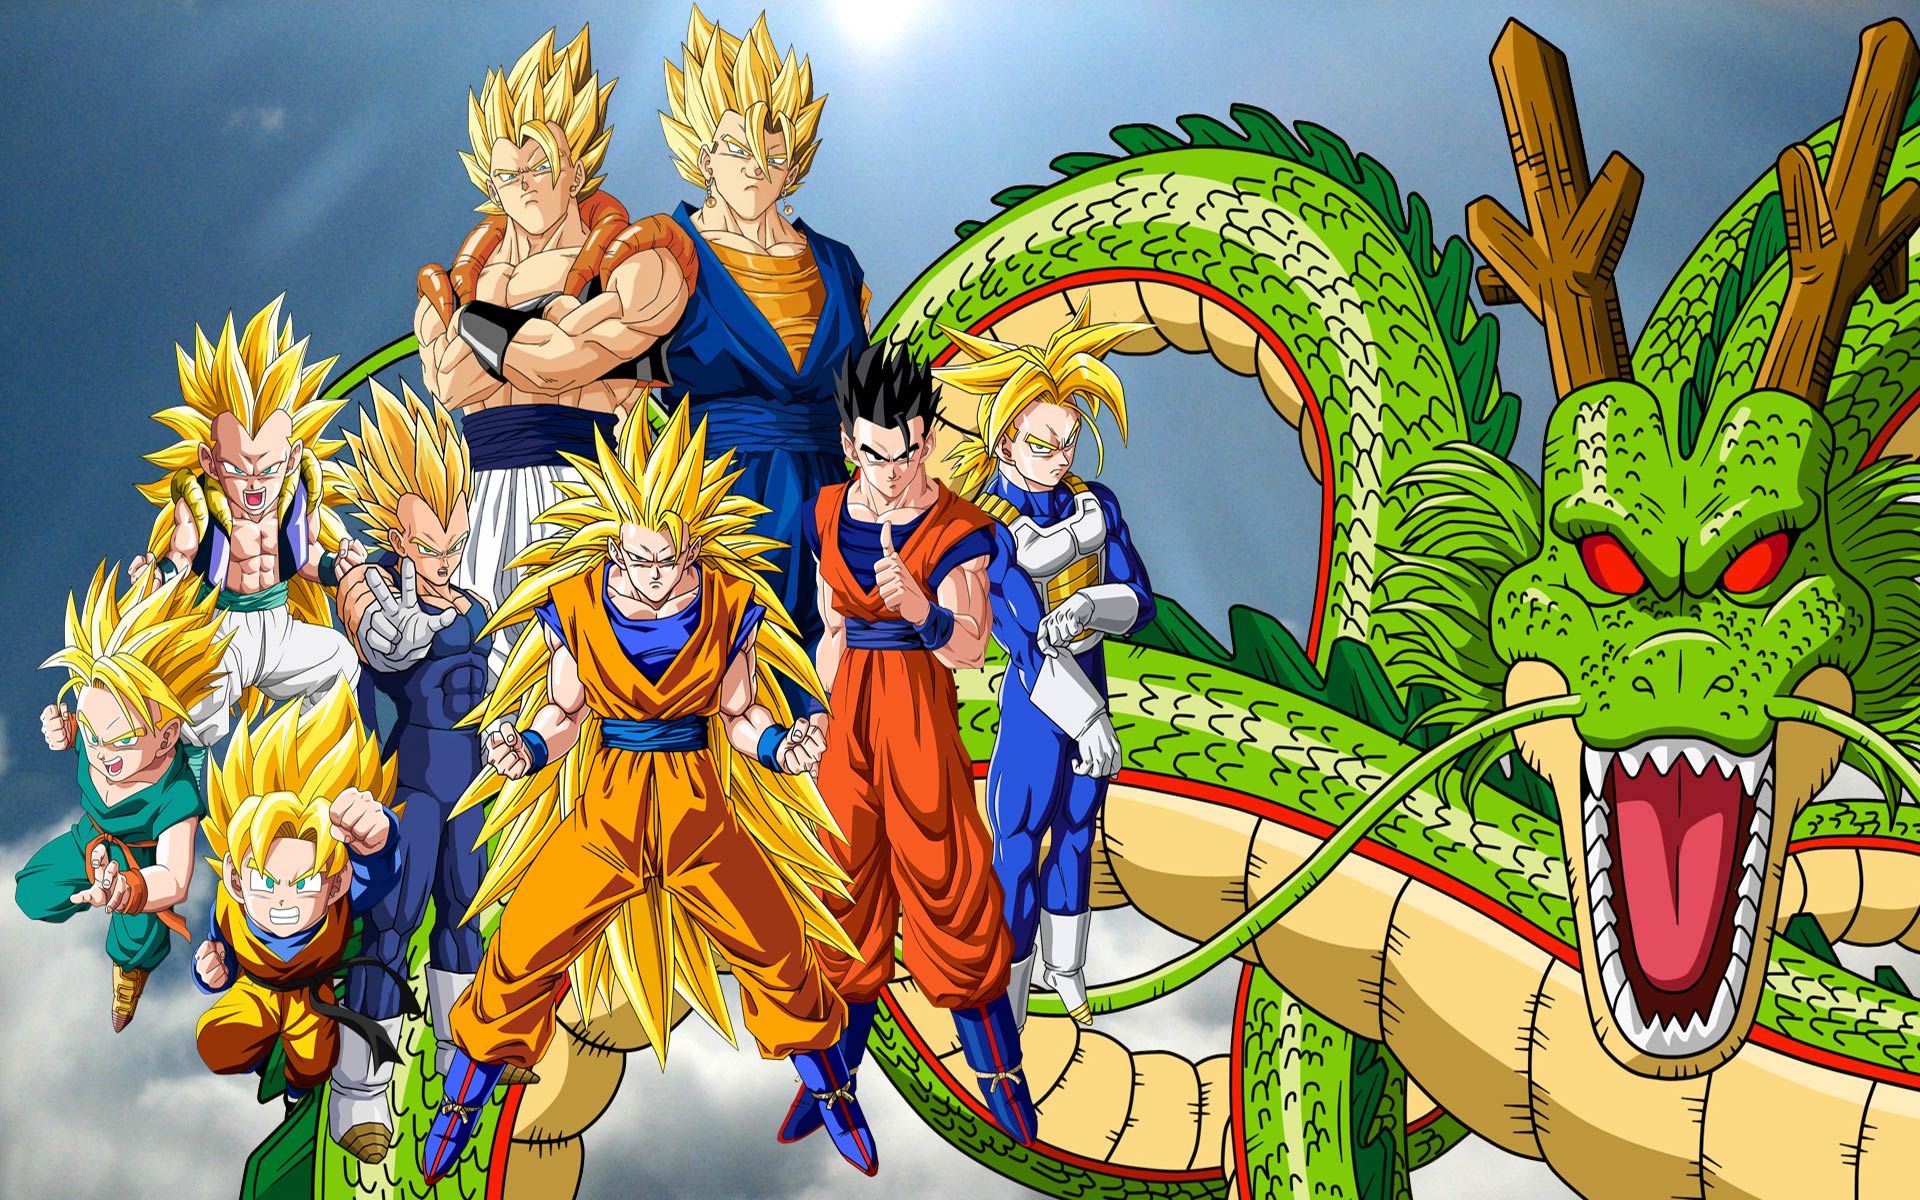 Fondos de Dragon Ball Z, Goku Wallpapers para descargar gratis